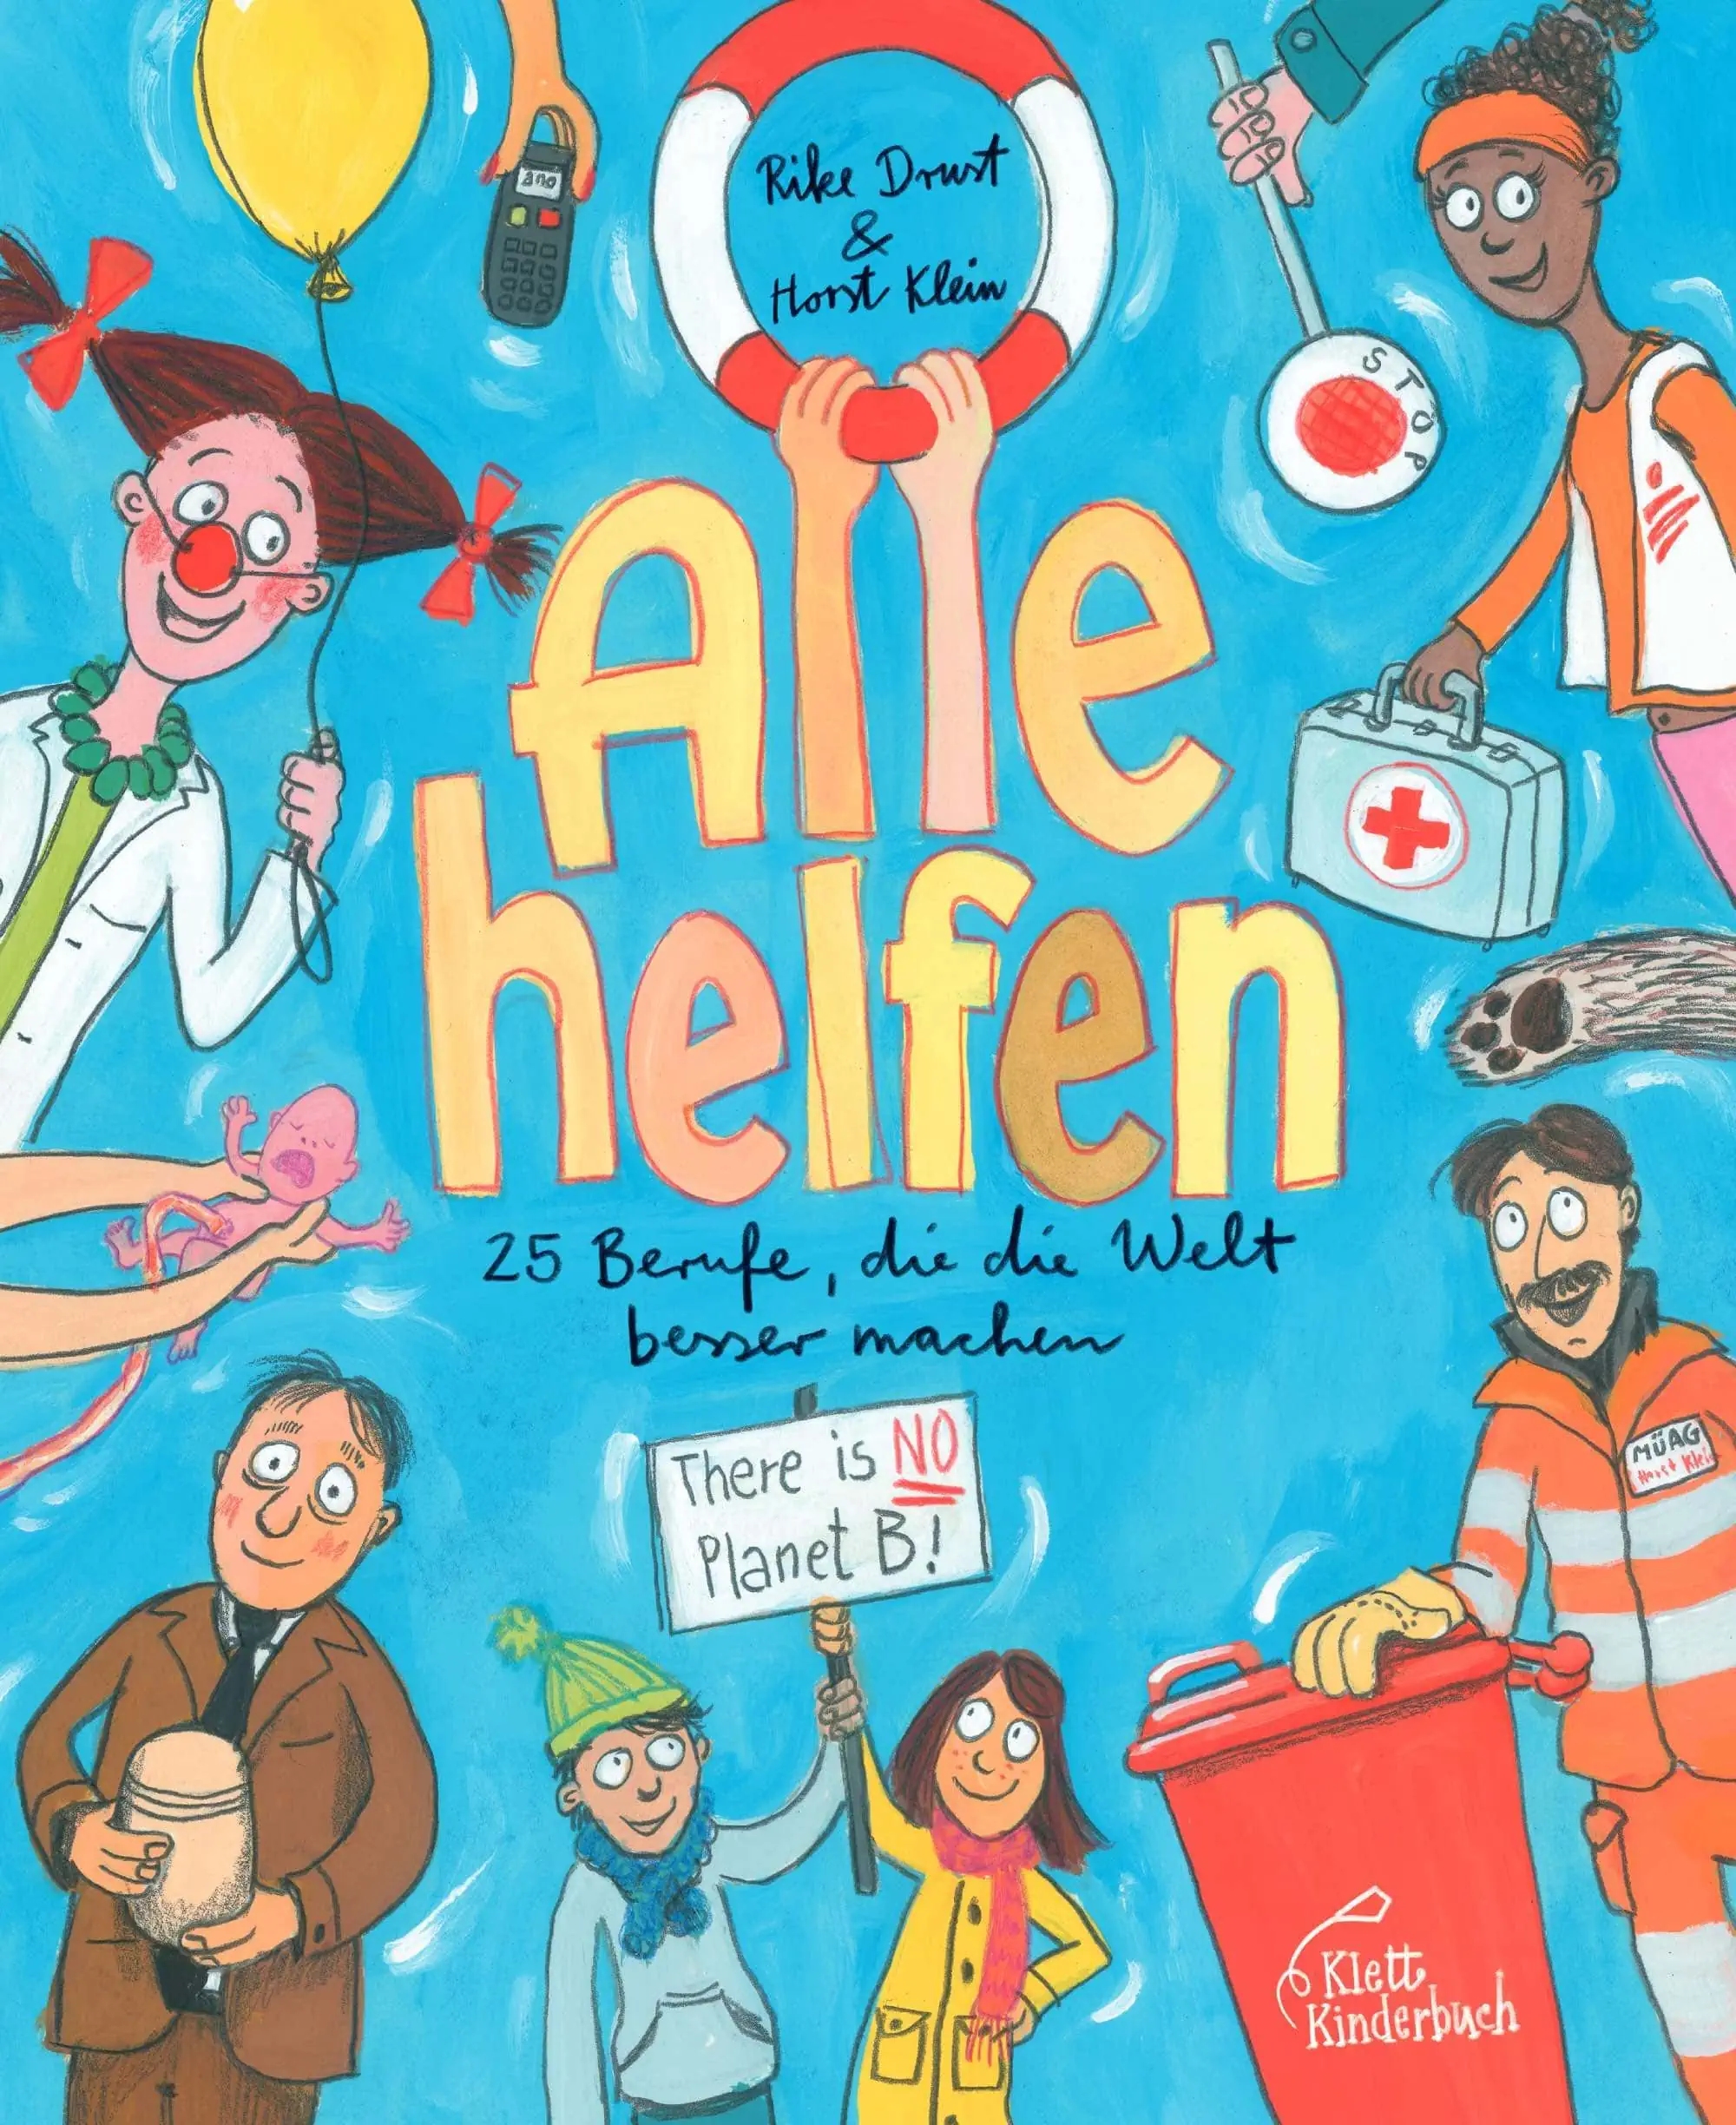 Kinderbuchtipps im Herbst 2023: Alle helfen von Rike Drust und Horst Klein, Klett Kinderbuch // HIMBEER